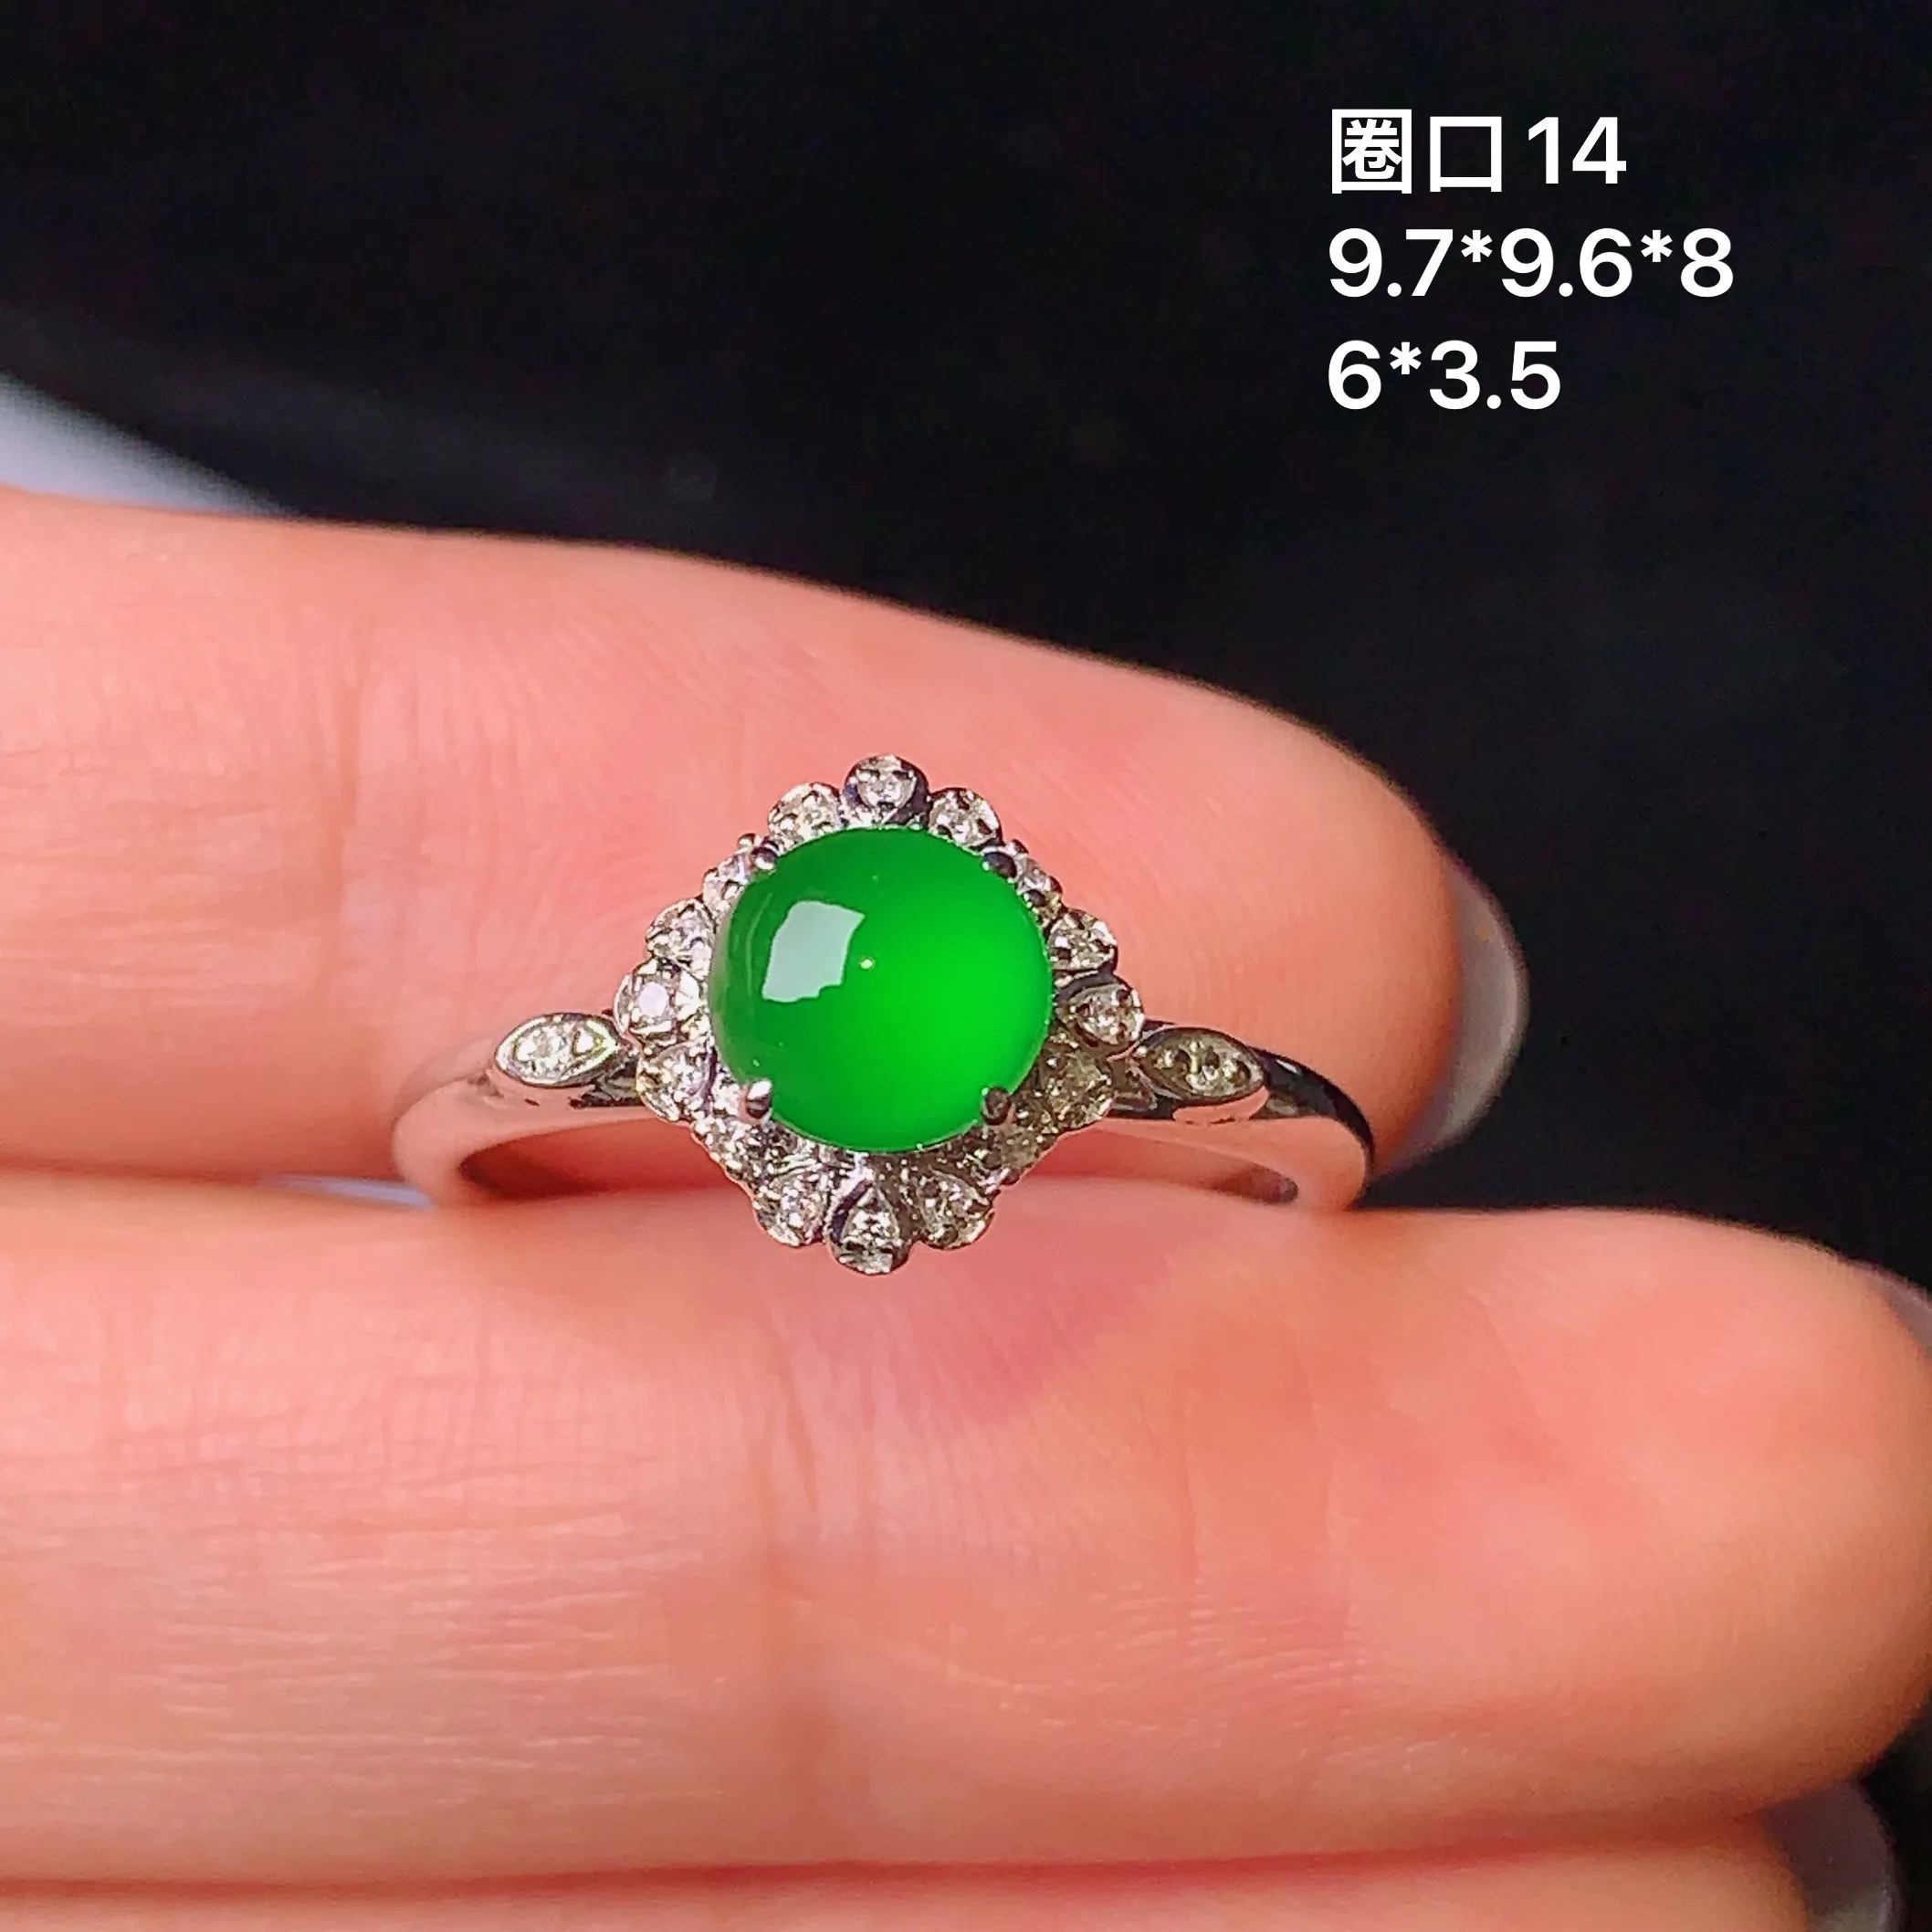 18k金钻镶嵌满绿蛋面戒指 玉质细腻 色泽清新艳丽 圈口14整体尺寸9.7*9.6*8